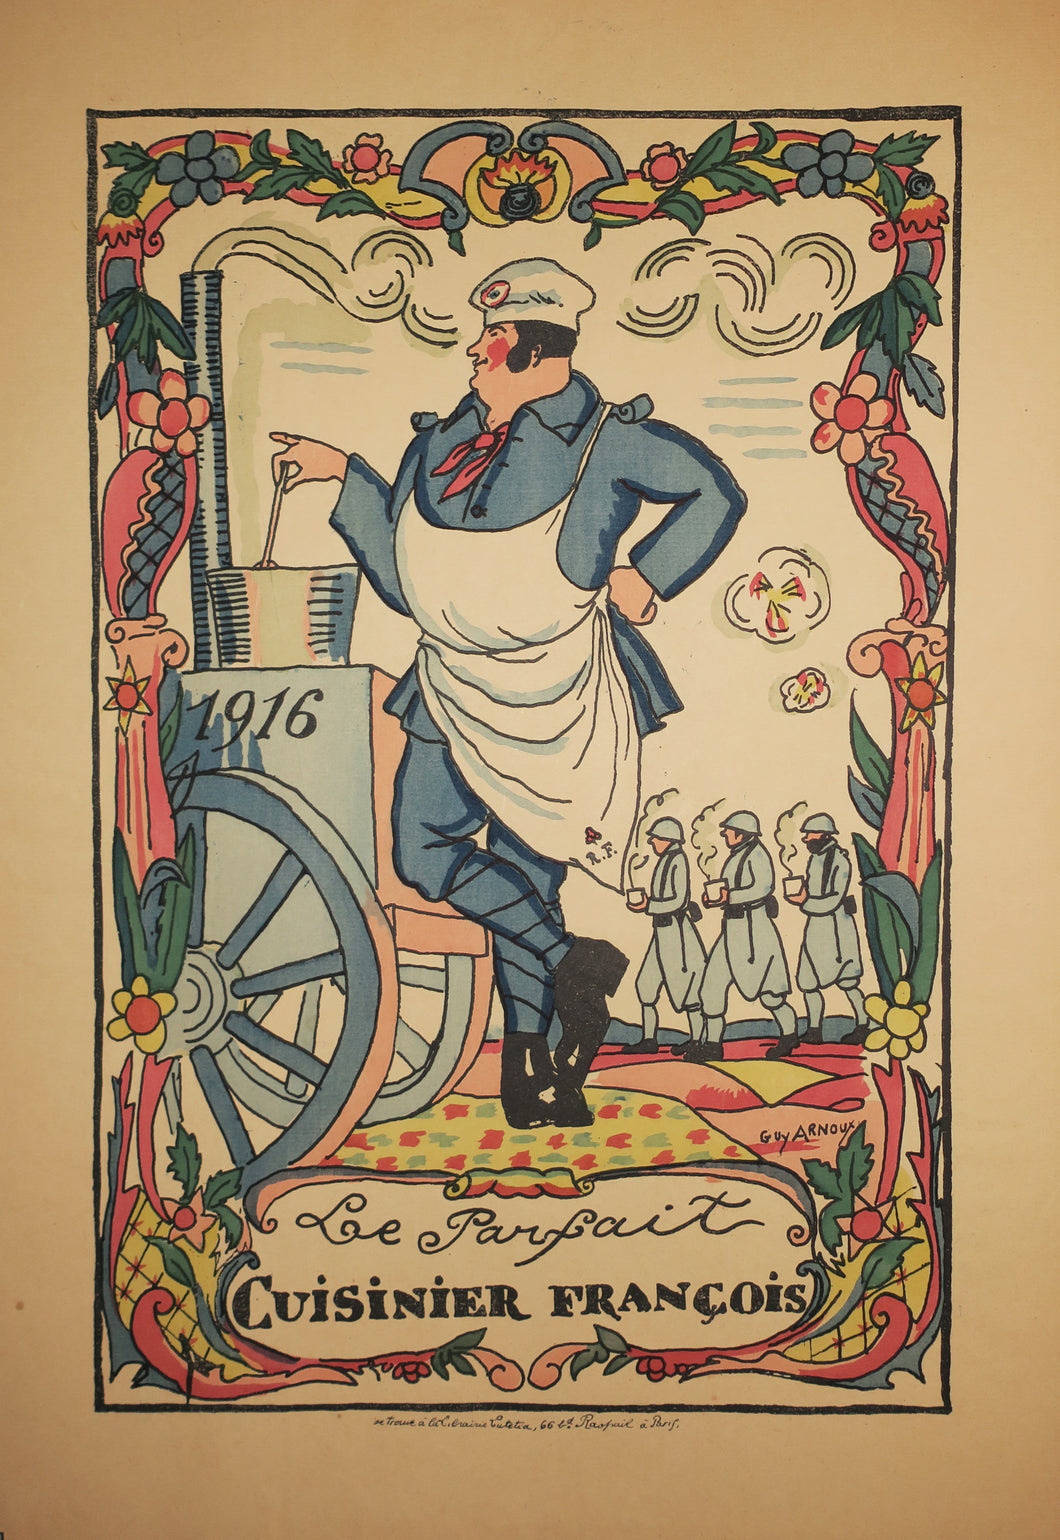 Le parfait cuisinier français. 1916.